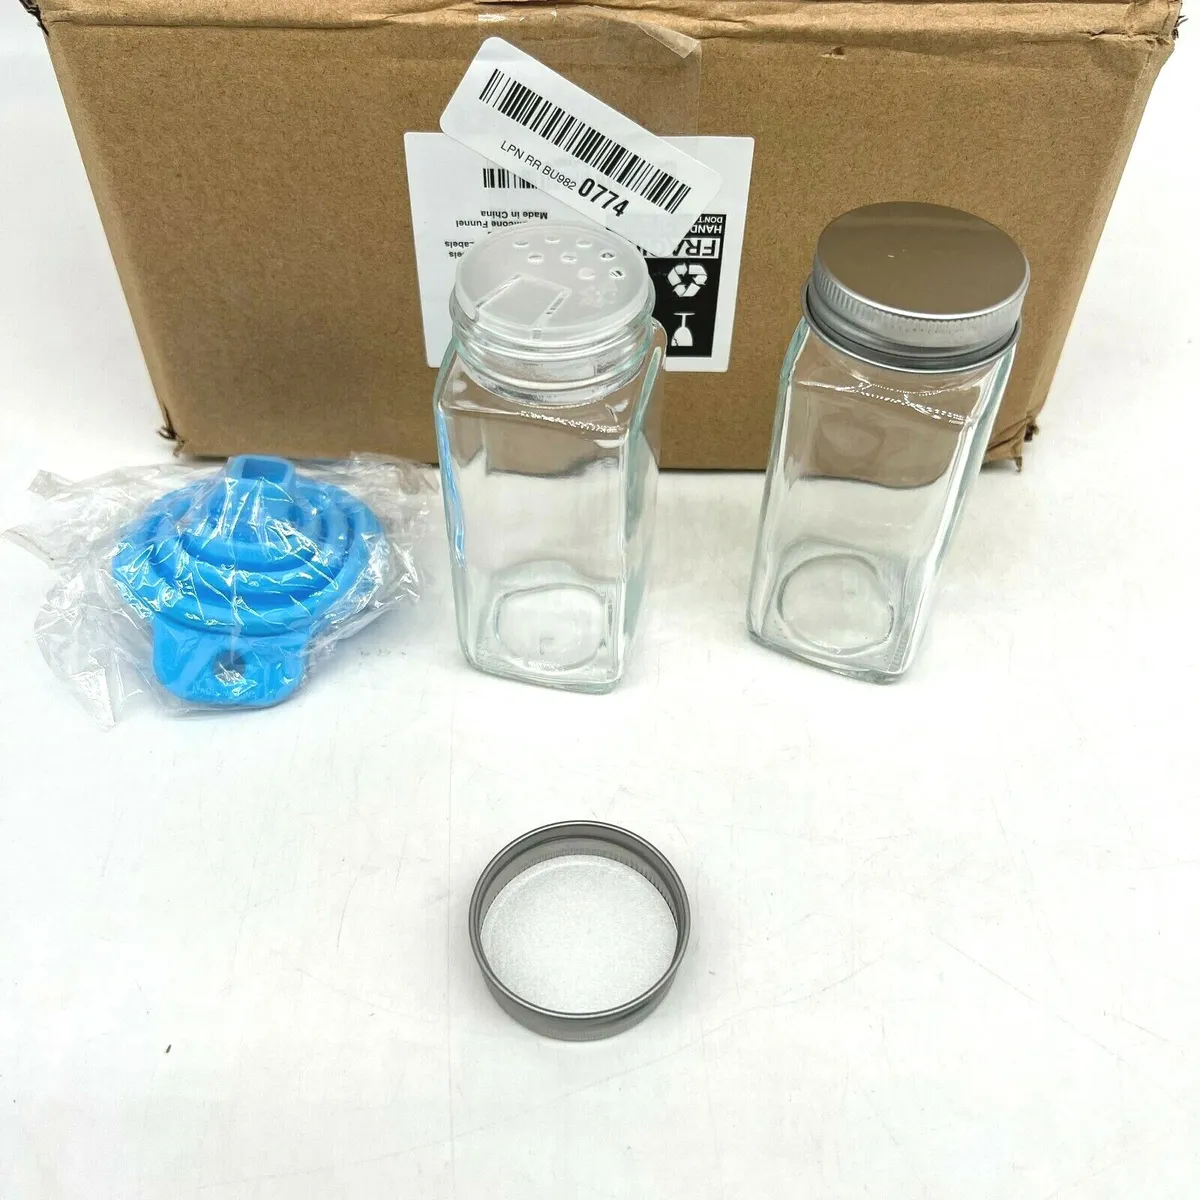  AOZITA 24 Pcs Glass Spice Jars with Labels - 4oz Empty